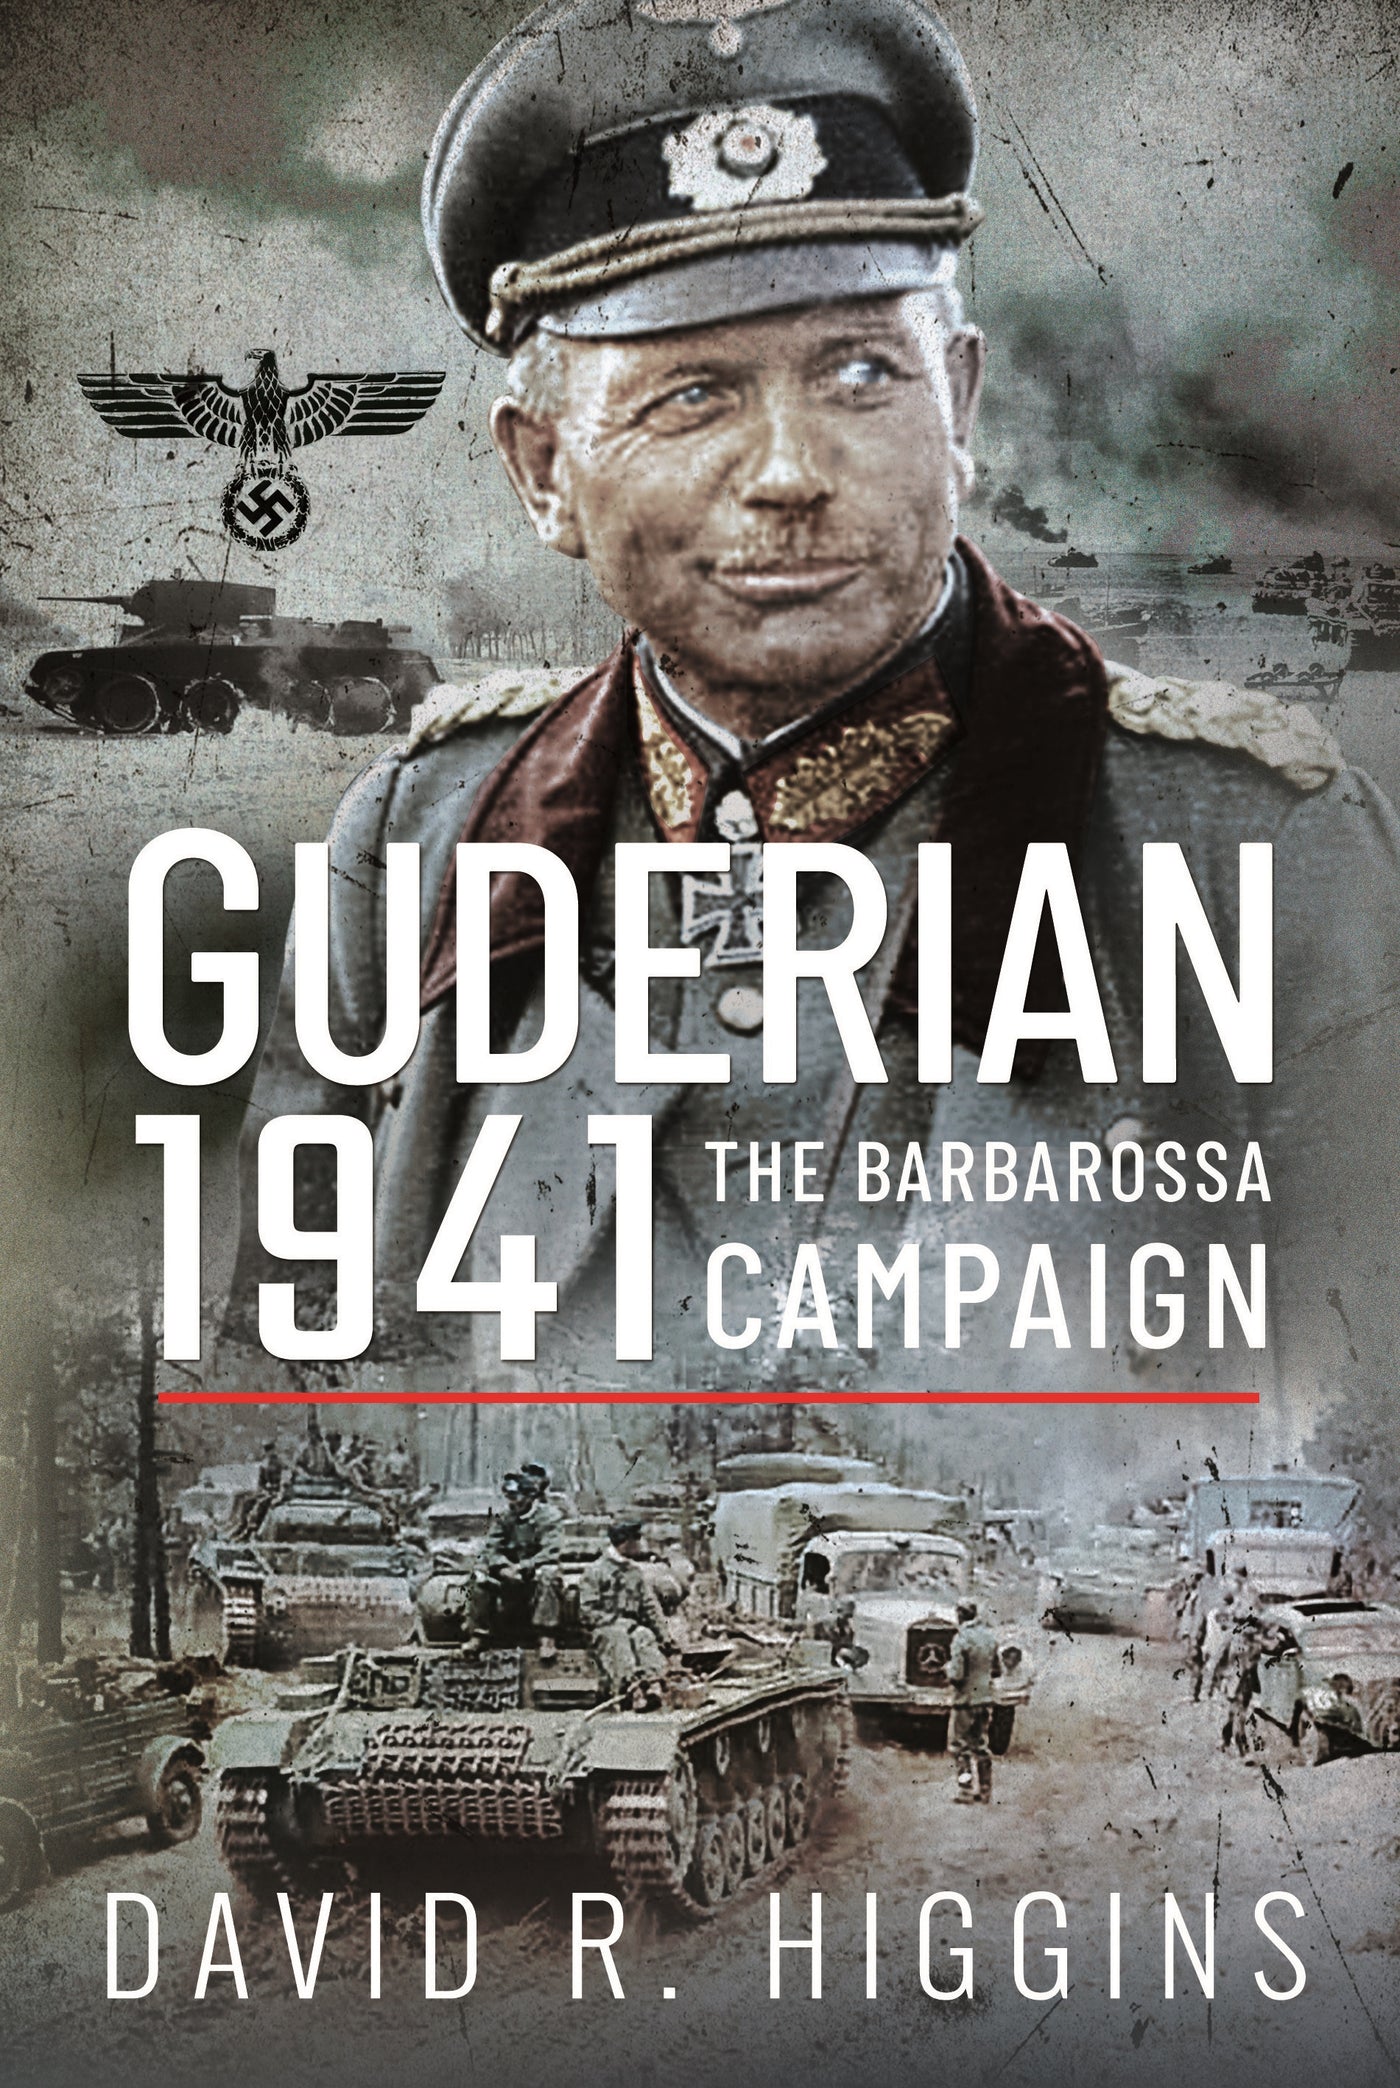 Guderian 1941